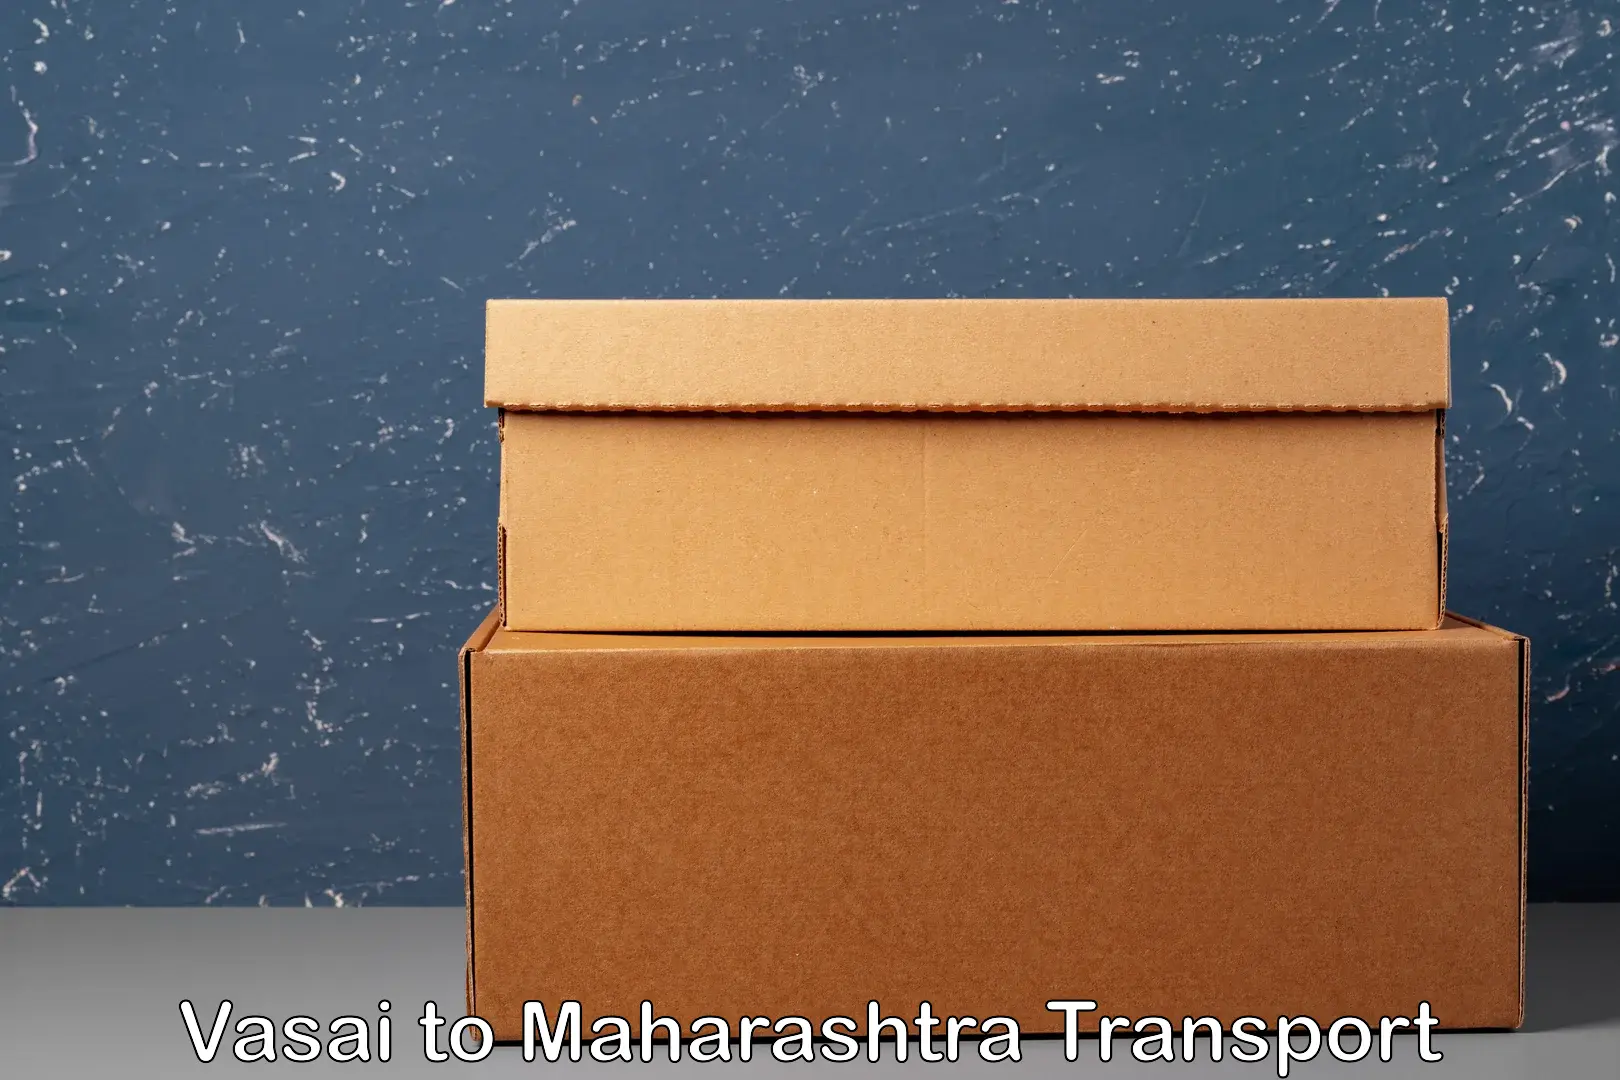 Nearby transport service Vasai to Maharashtra